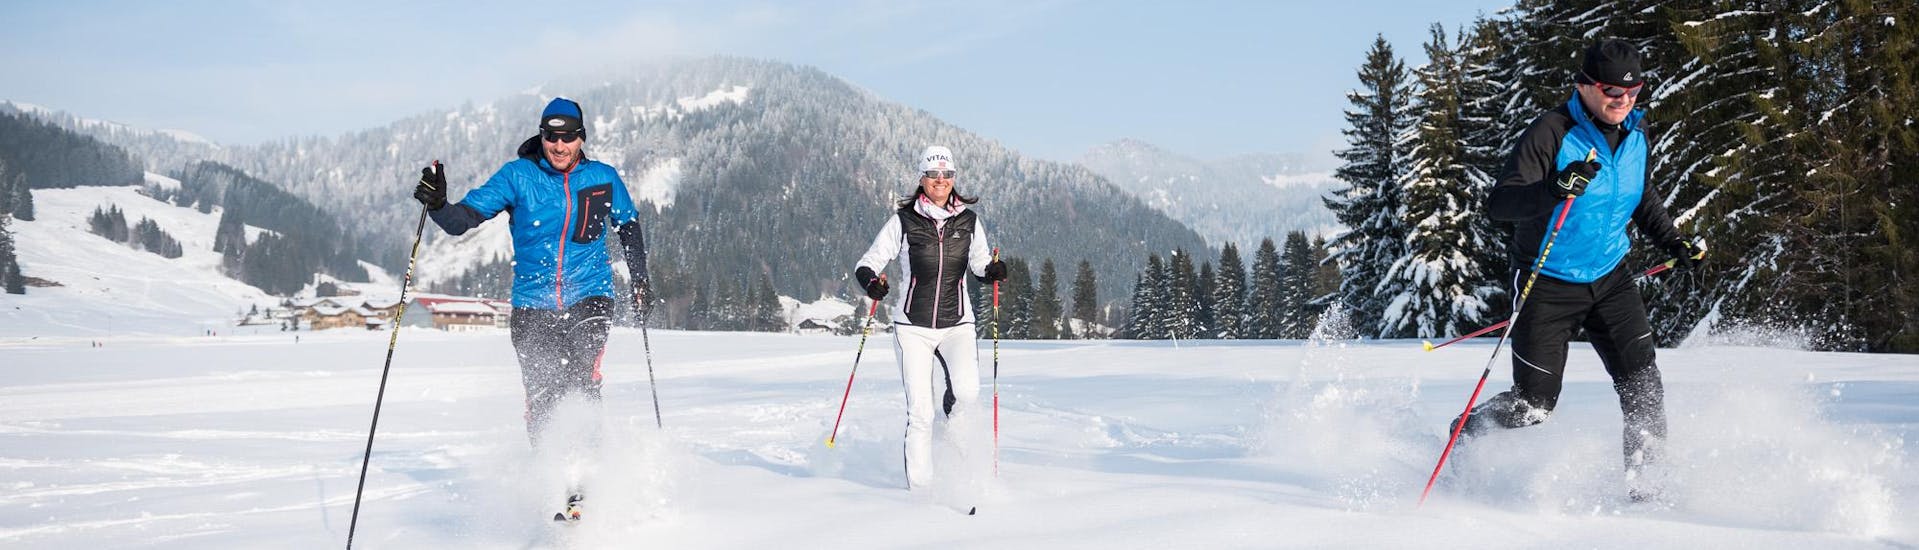 Drie wintersporters volgen de privé langlauflessen voor alle niveaus - klassiek in de sneeuwsportschool Balderschwang.